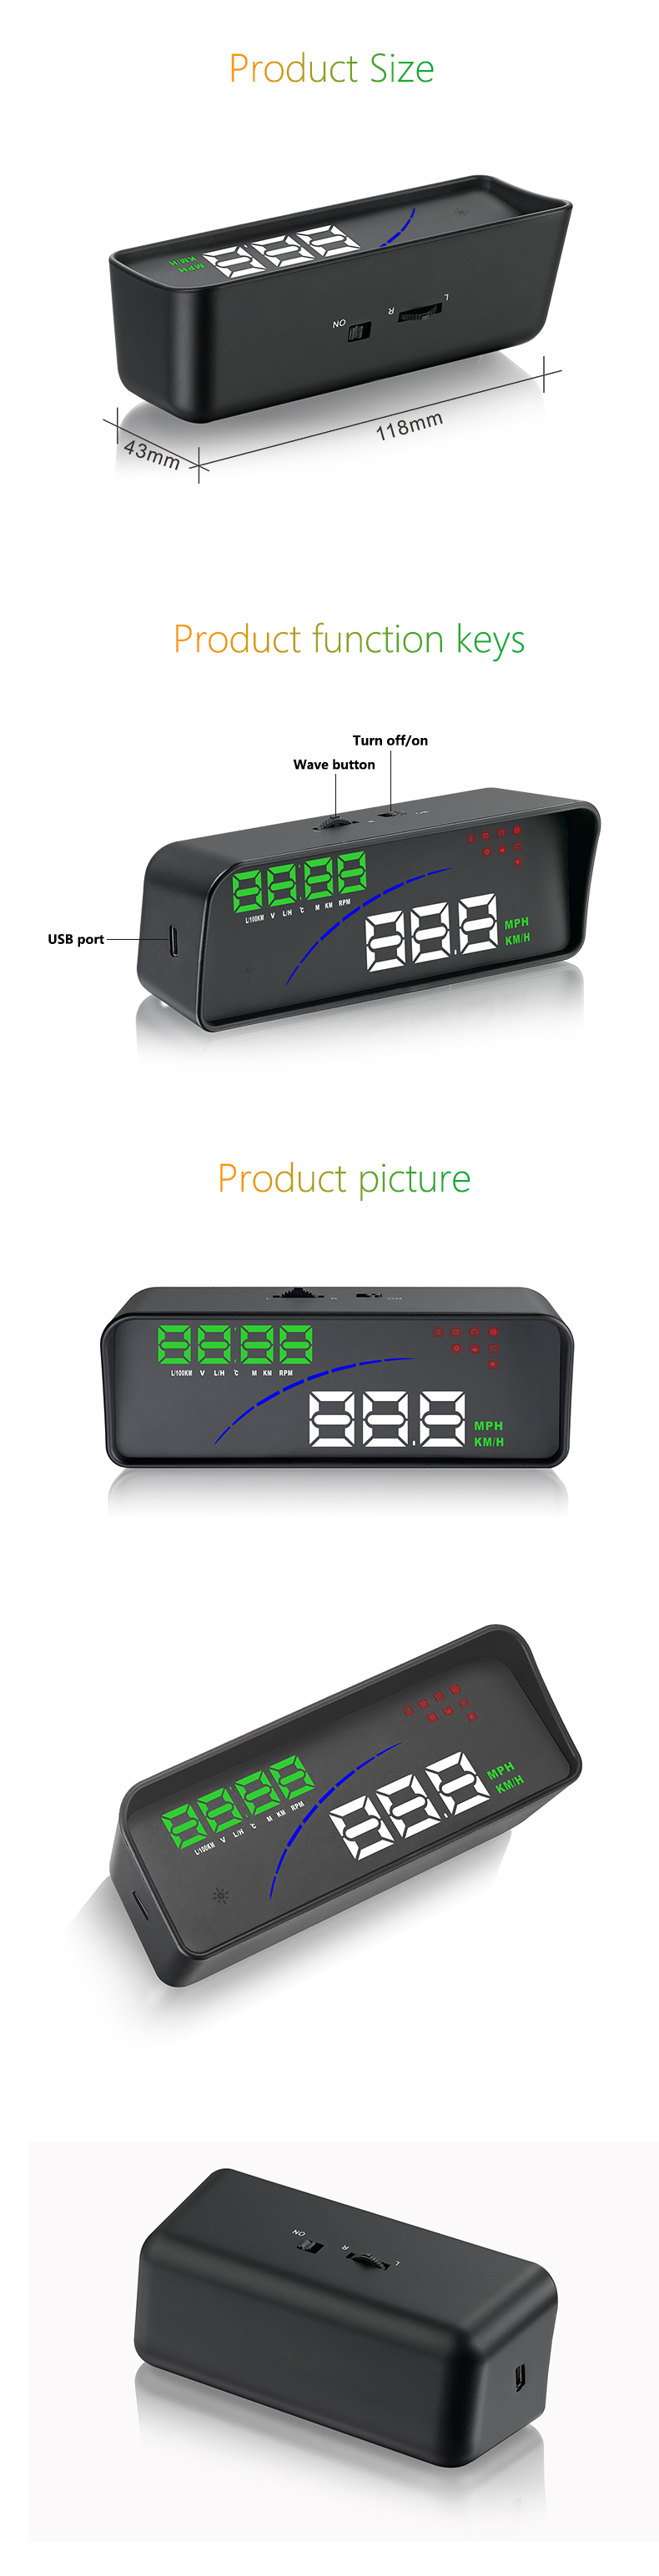 P9 OBD Smart Digital Meter Head Up Display Car Styling HUD Speedometer